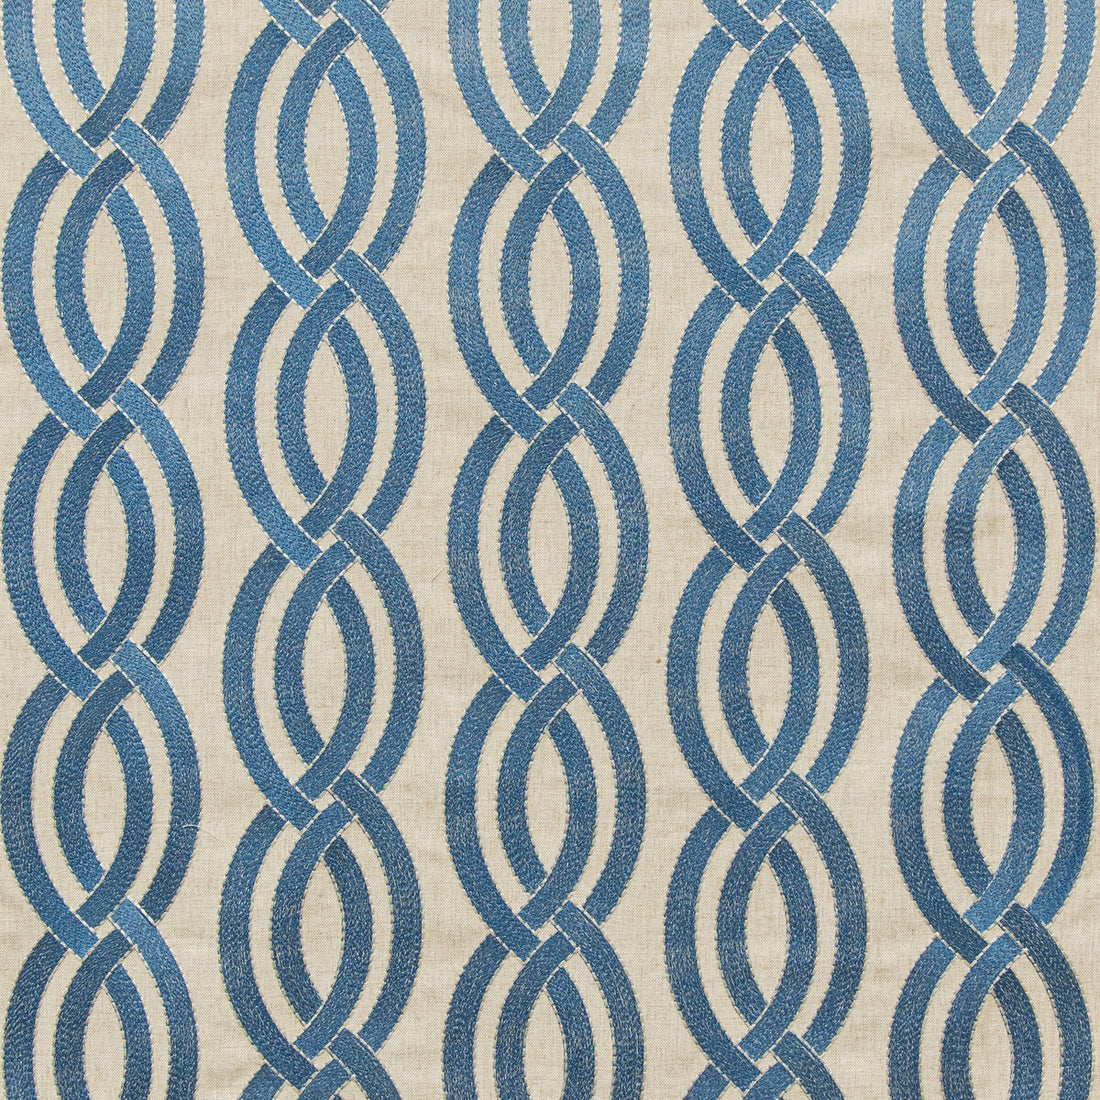 Kravet Basics fabric in 35790-516 color - pattern 35790.516.0 - by Kravet Basics